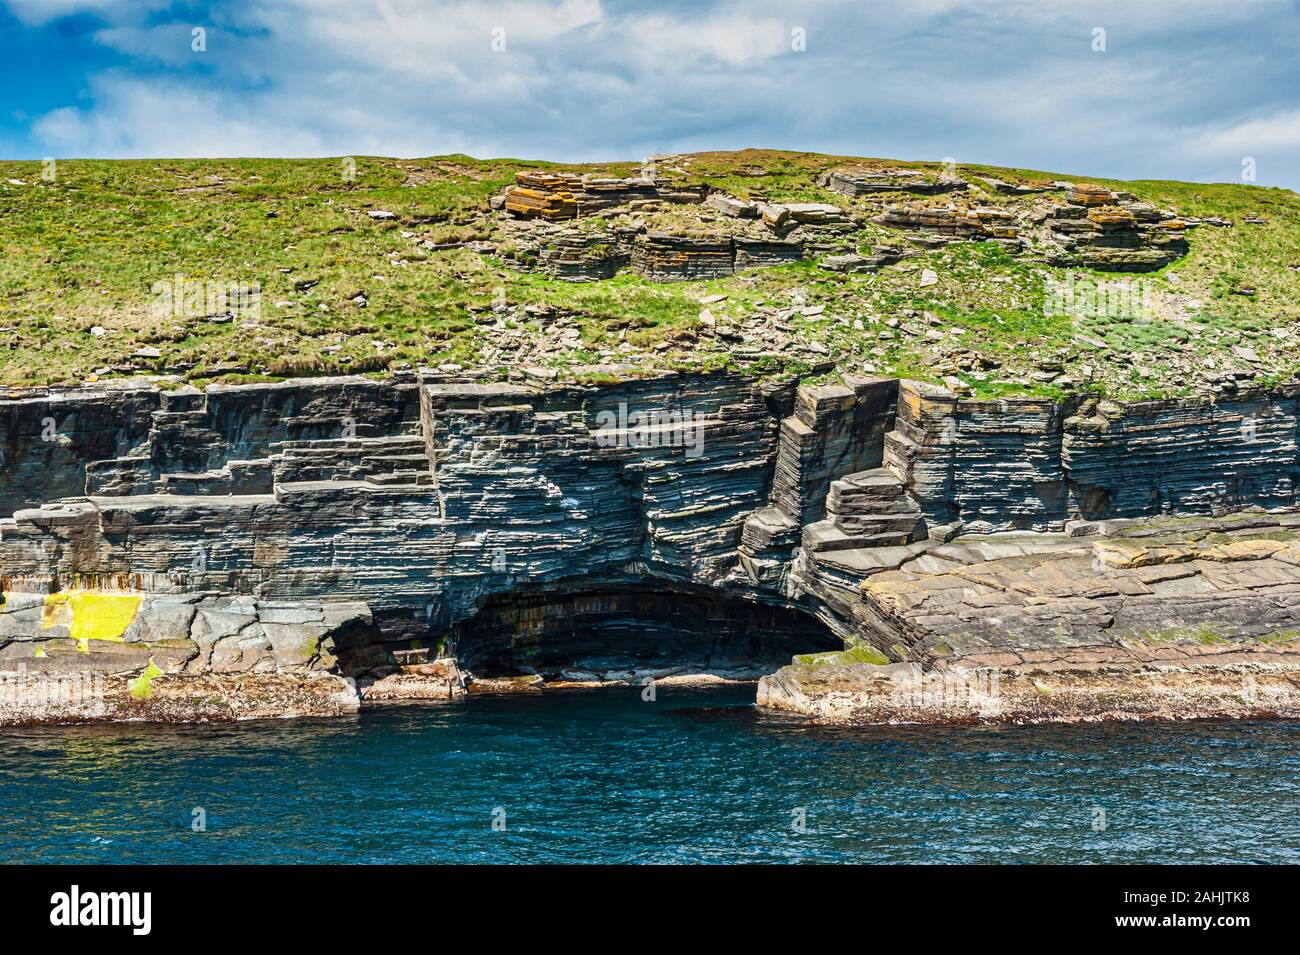 Letti orizzontale della vecchia pietra arenaria rossa sul lato est dell isola Swona situato a sud dell'isola di Orkney nel Pentland Firth Scotland Regno Unito Foto Stock